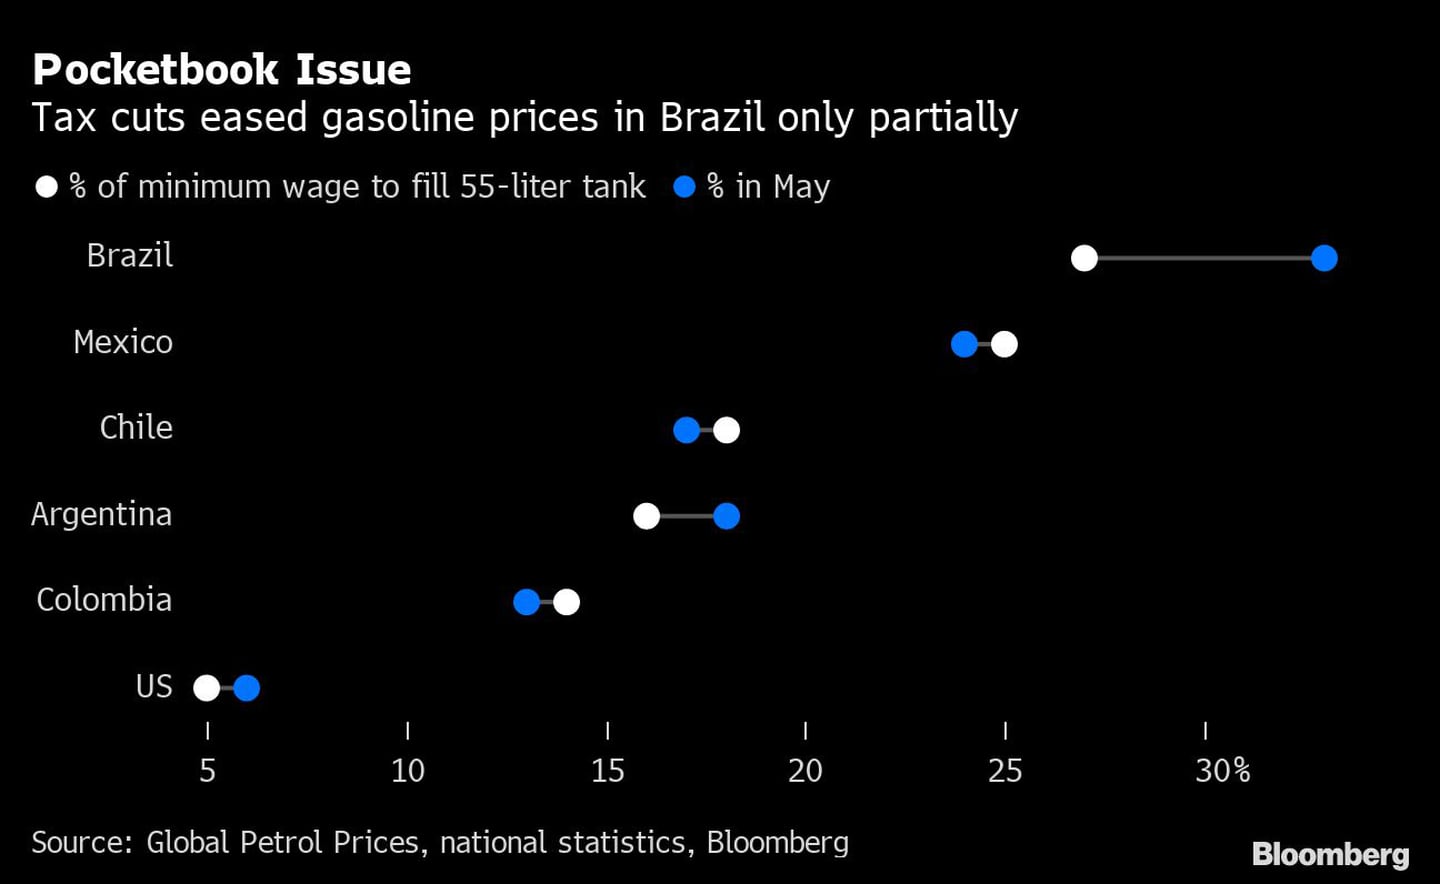 Los recortes fiscales sólo alivian parcialmente los precios de la gasolina en Brasildfd